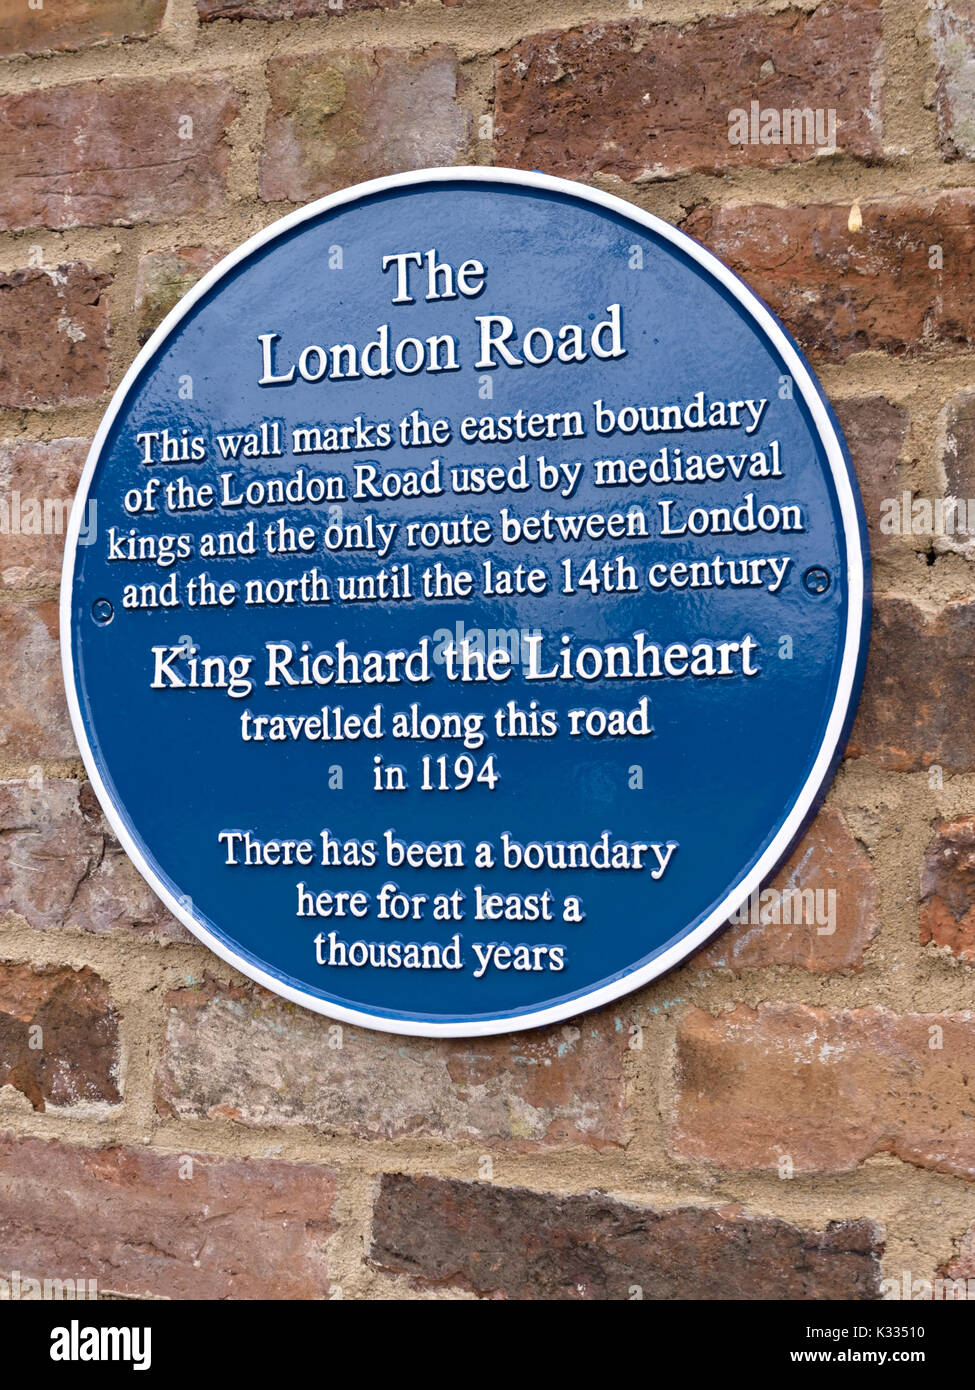 Storico parete metallica placca che indica che il percorso della vecchia strada di Londra in melton mowbray utilizzato da re Riccardo Cuor di Leone nel 1194. Foto Stock